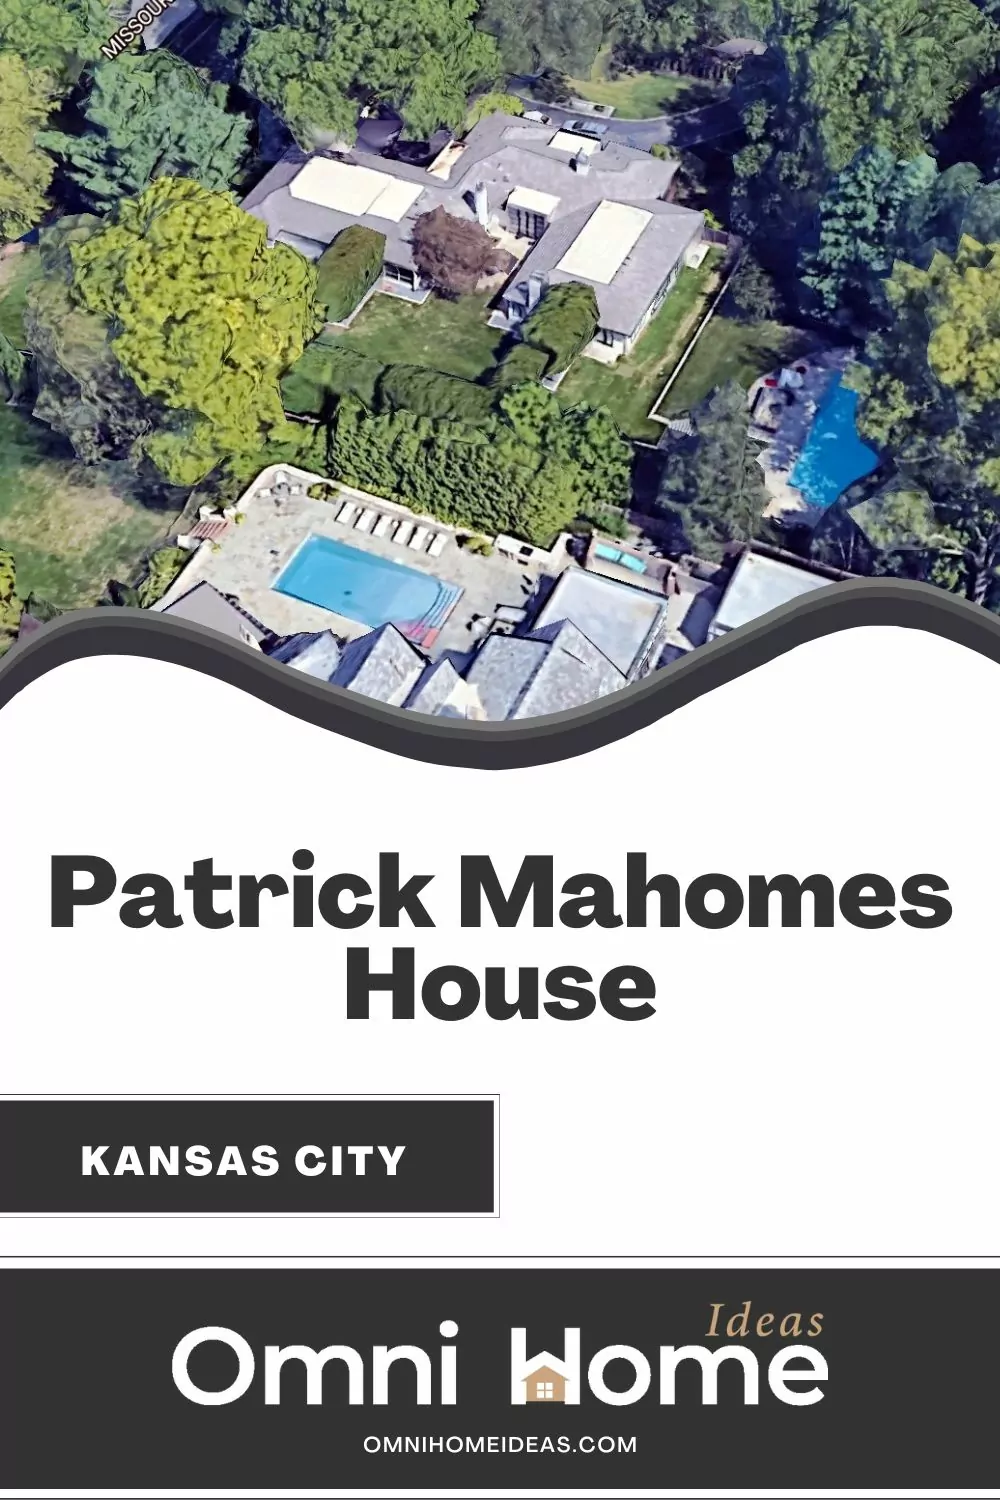 Patrick Mahomes House in Kansas City - Omni Home Ideas